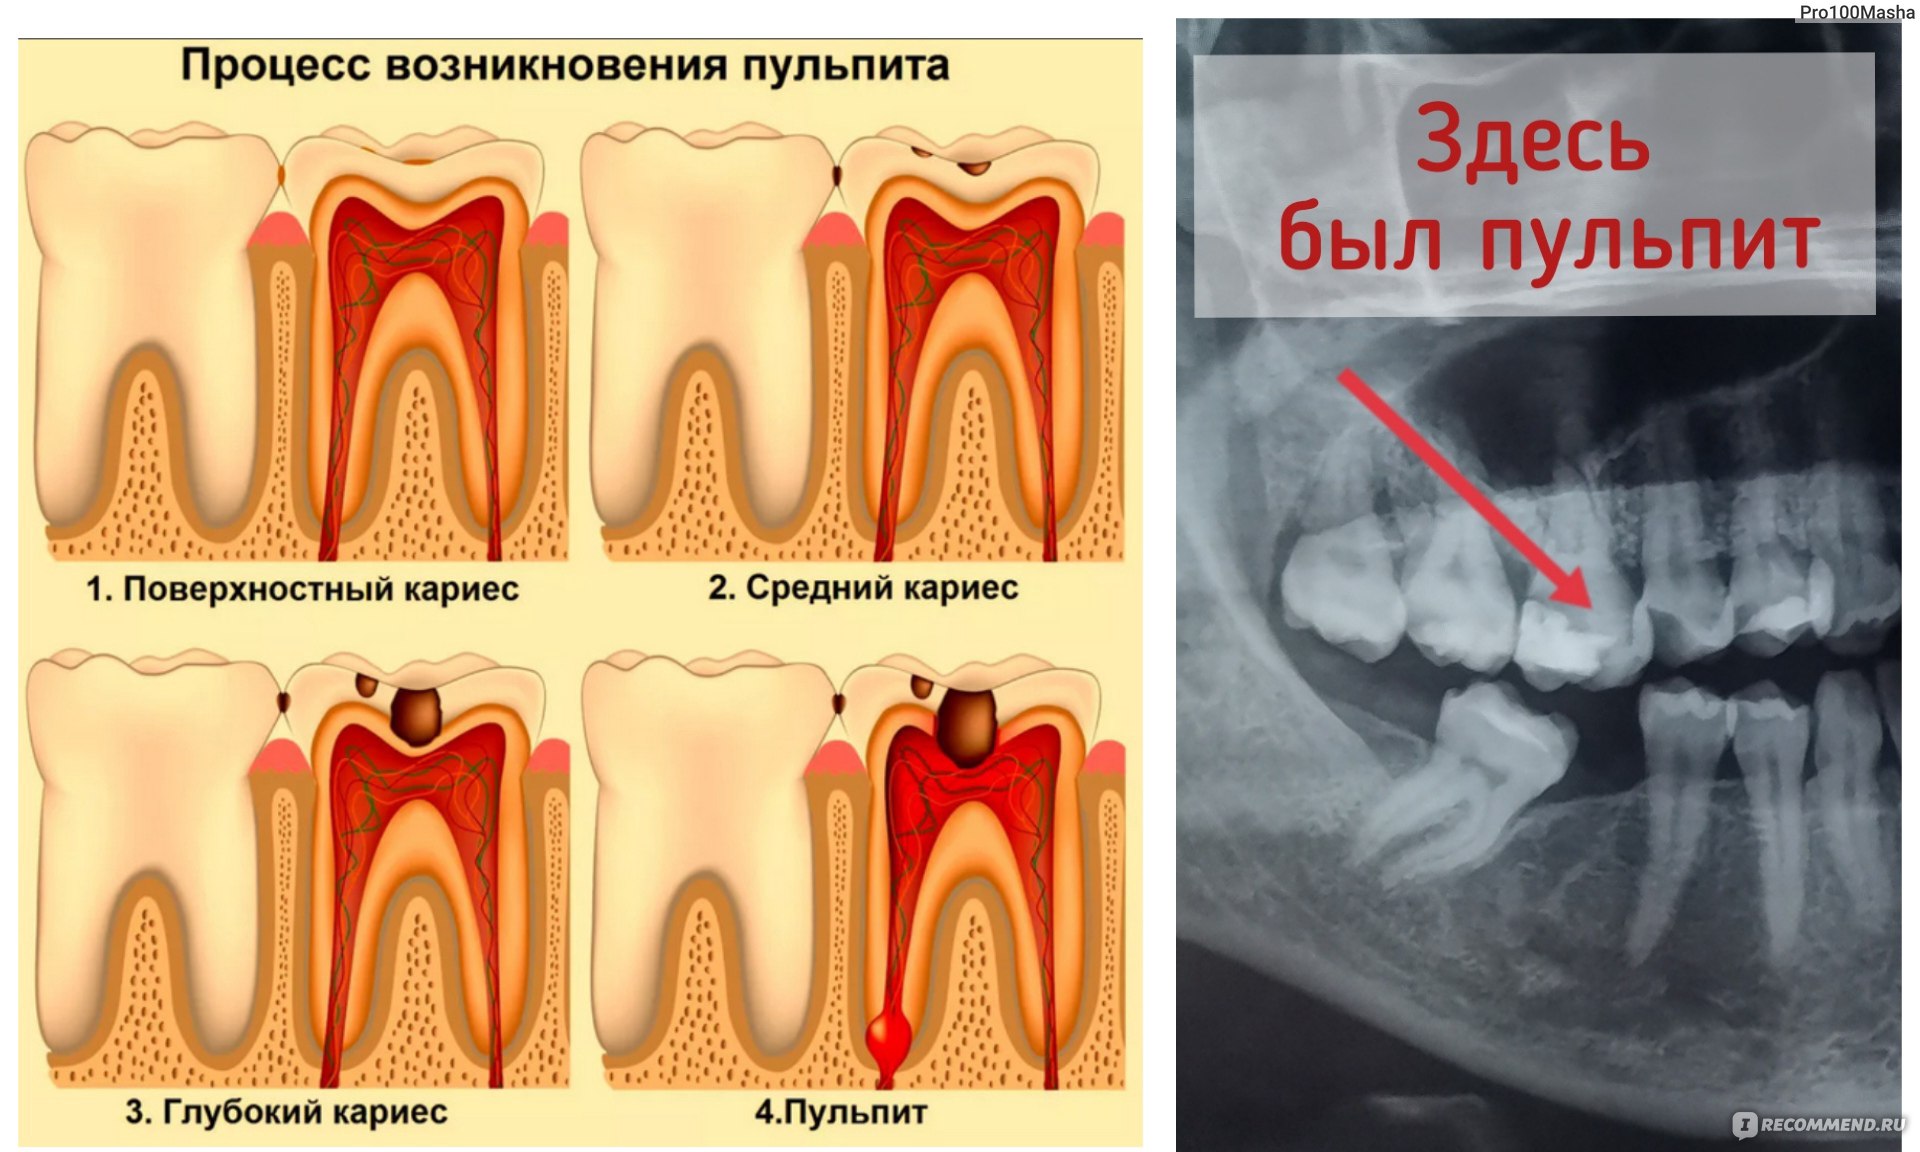 После мышьяка болит зуб, нужно ли срочно к врачу?